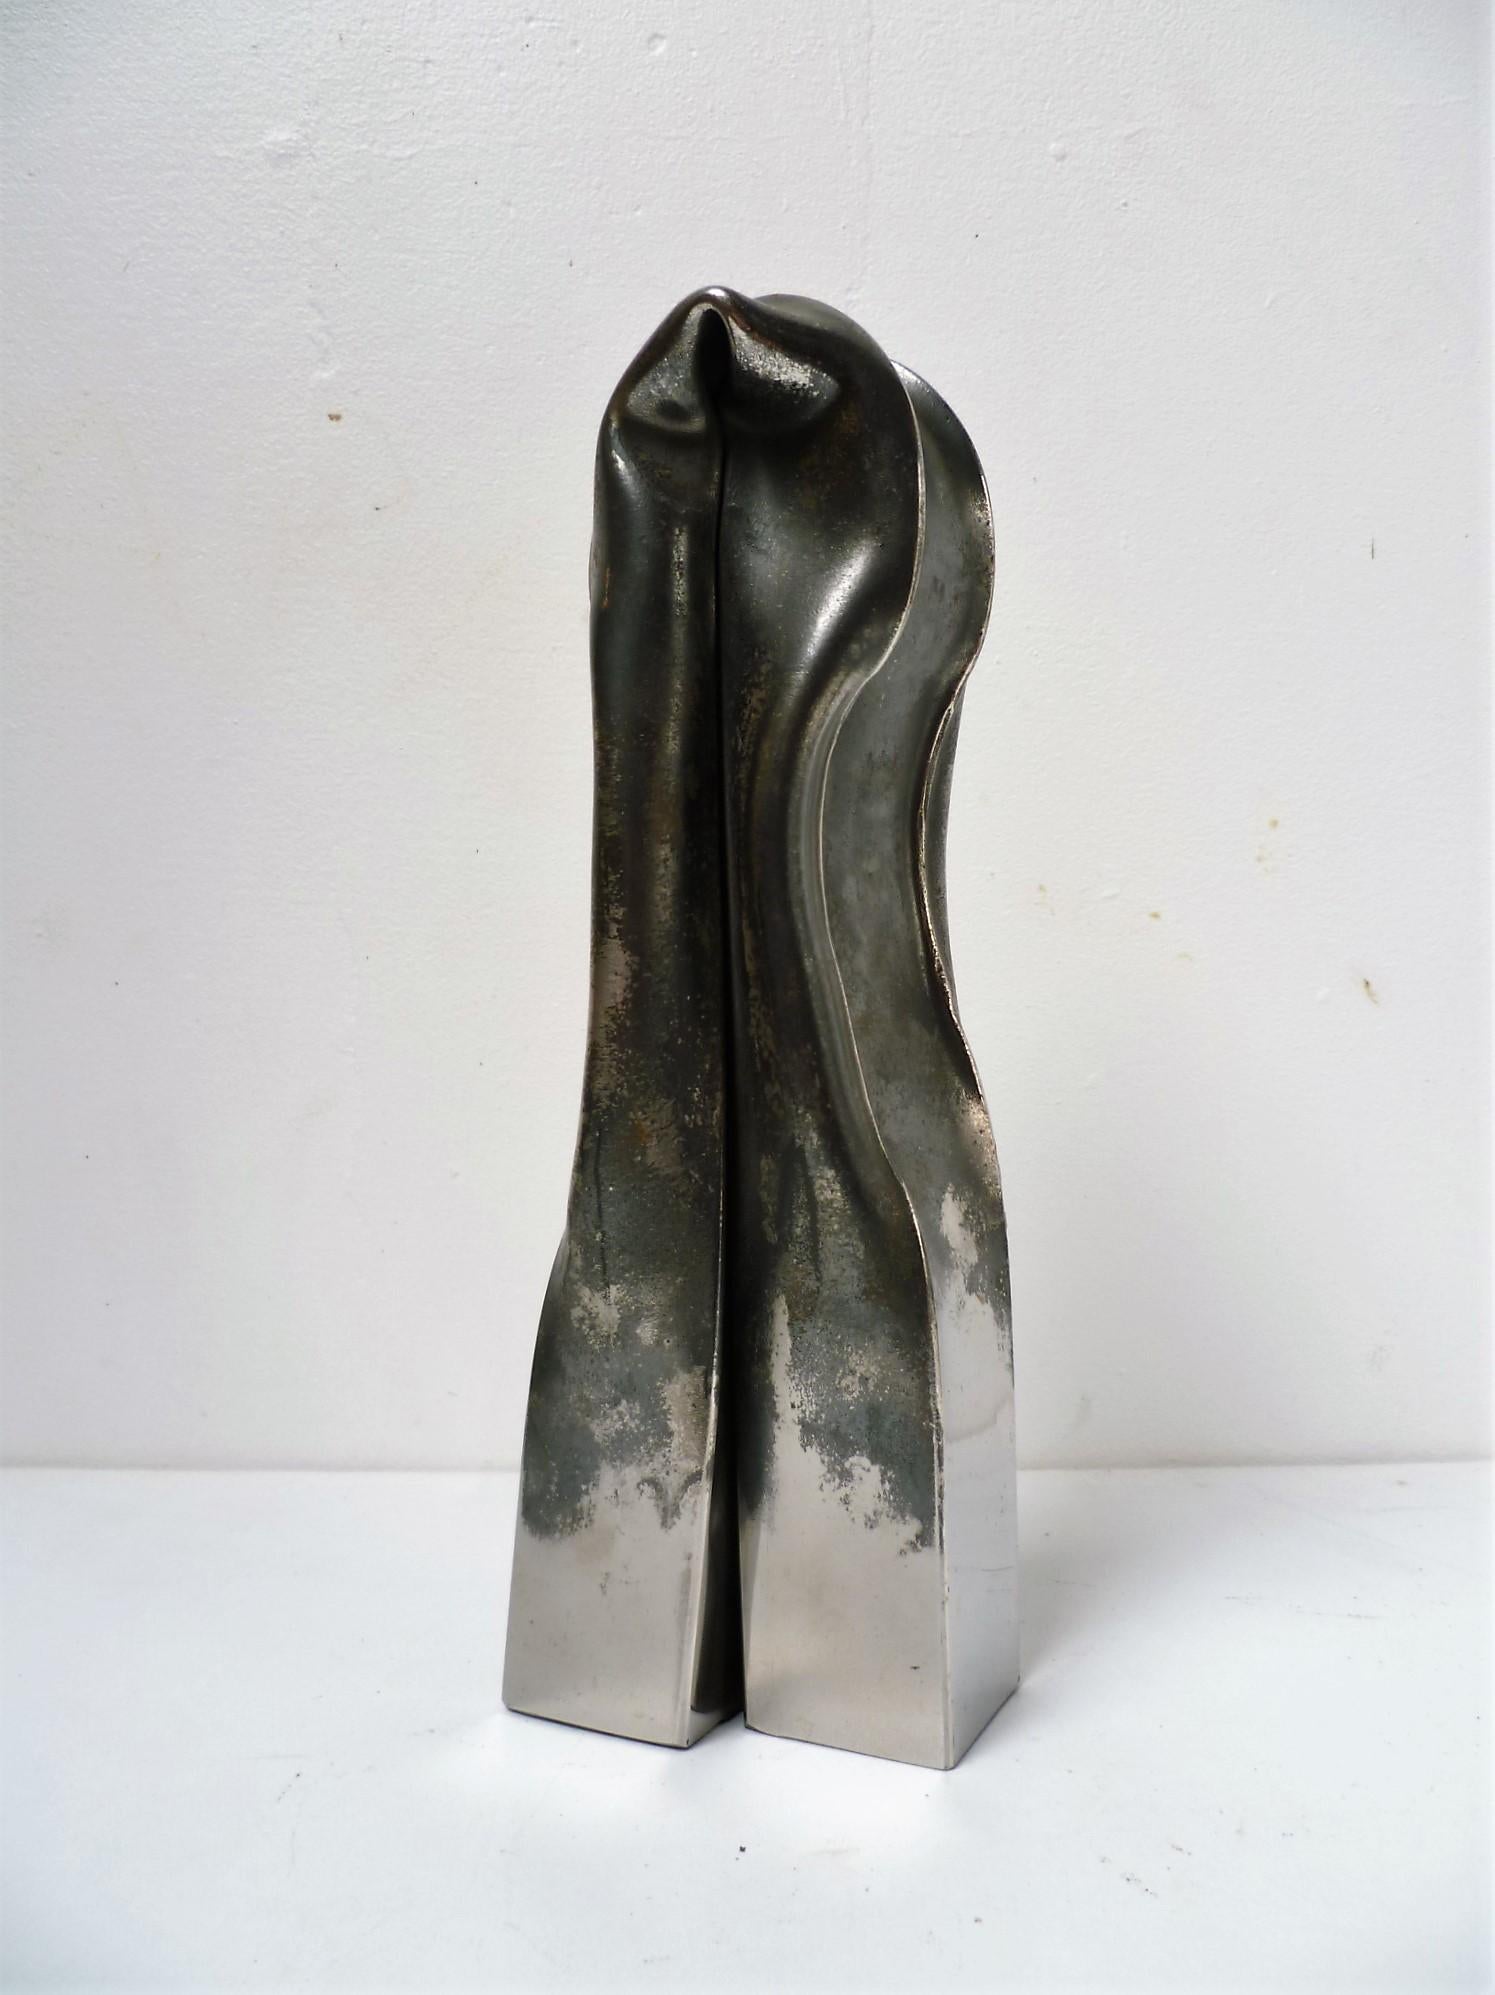 Art contemporain français par Frdrick Mazoir - Magmatisme 06 - Contemporain Sculpture par Frédérick Mazoir 